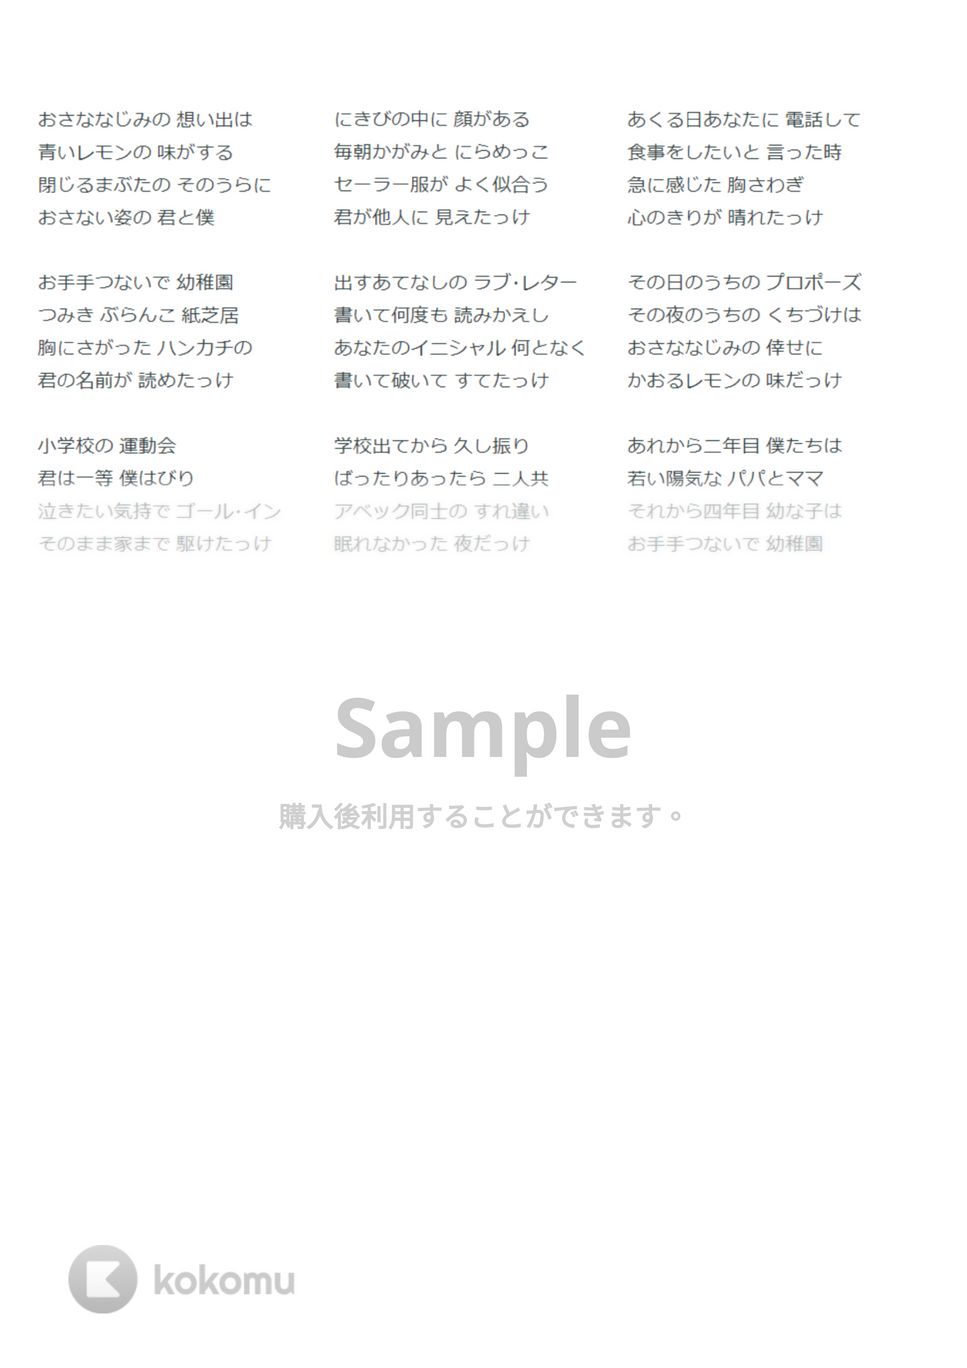 デューク・エイセス - おさななじみ (ウクレレソロ / High-G,Low-G / 初～中級) by ukulelepapa